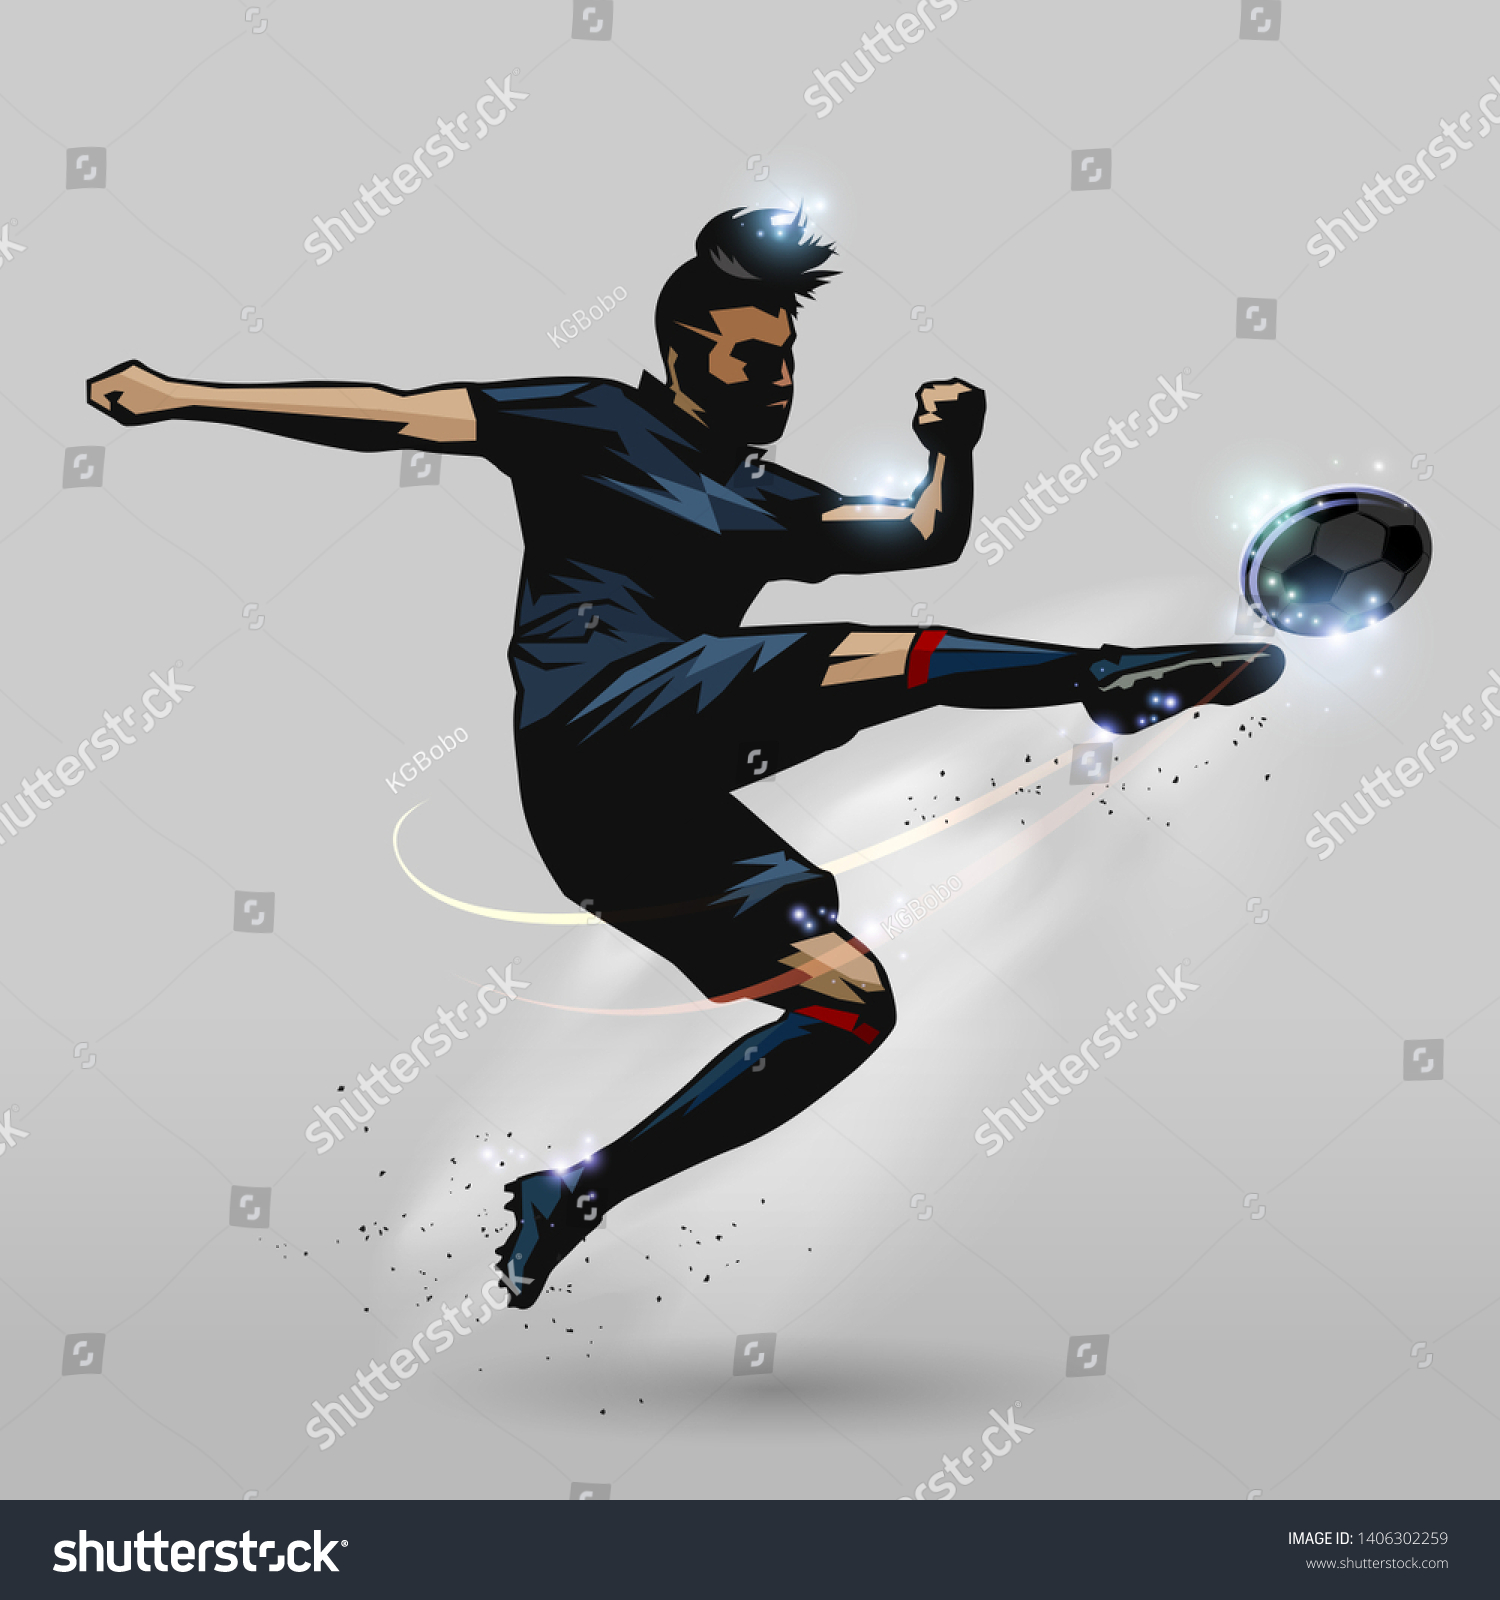 サッカー選手のボール デザインを打つボレー キック のベクター画像素材 ロイヤリティフリー